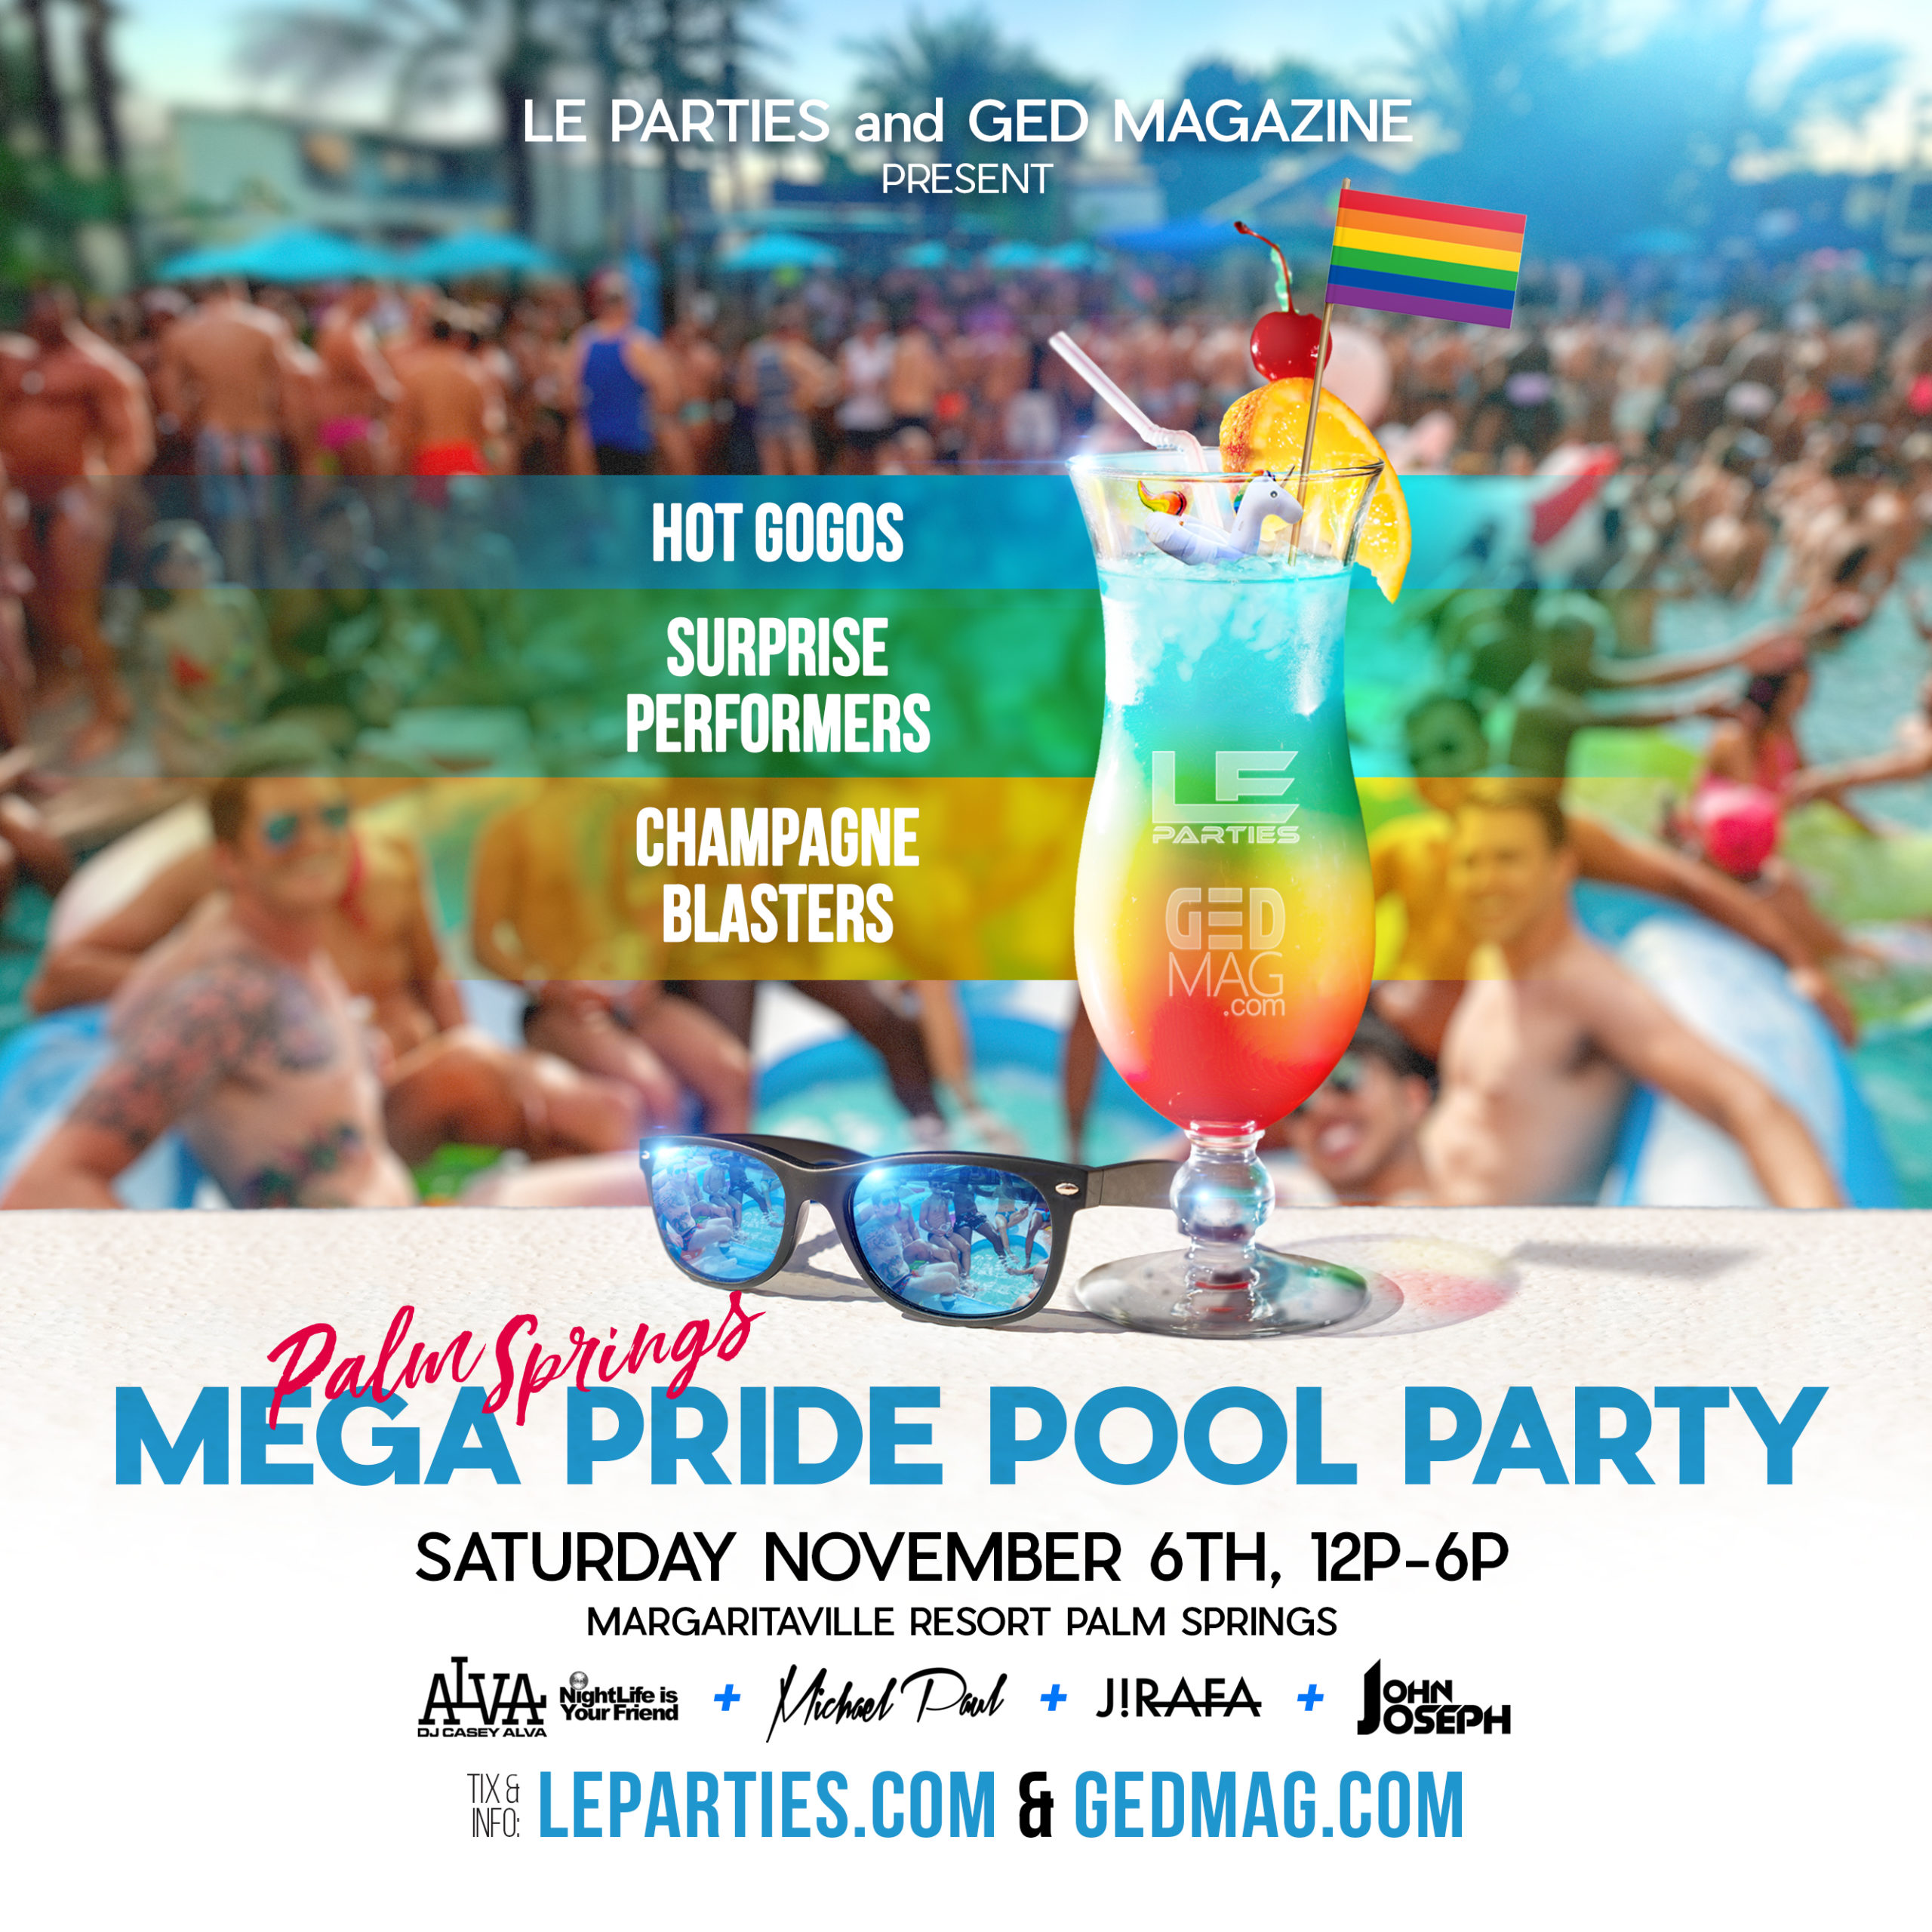 Southern California mega pride pool party | Saturday, November 6th